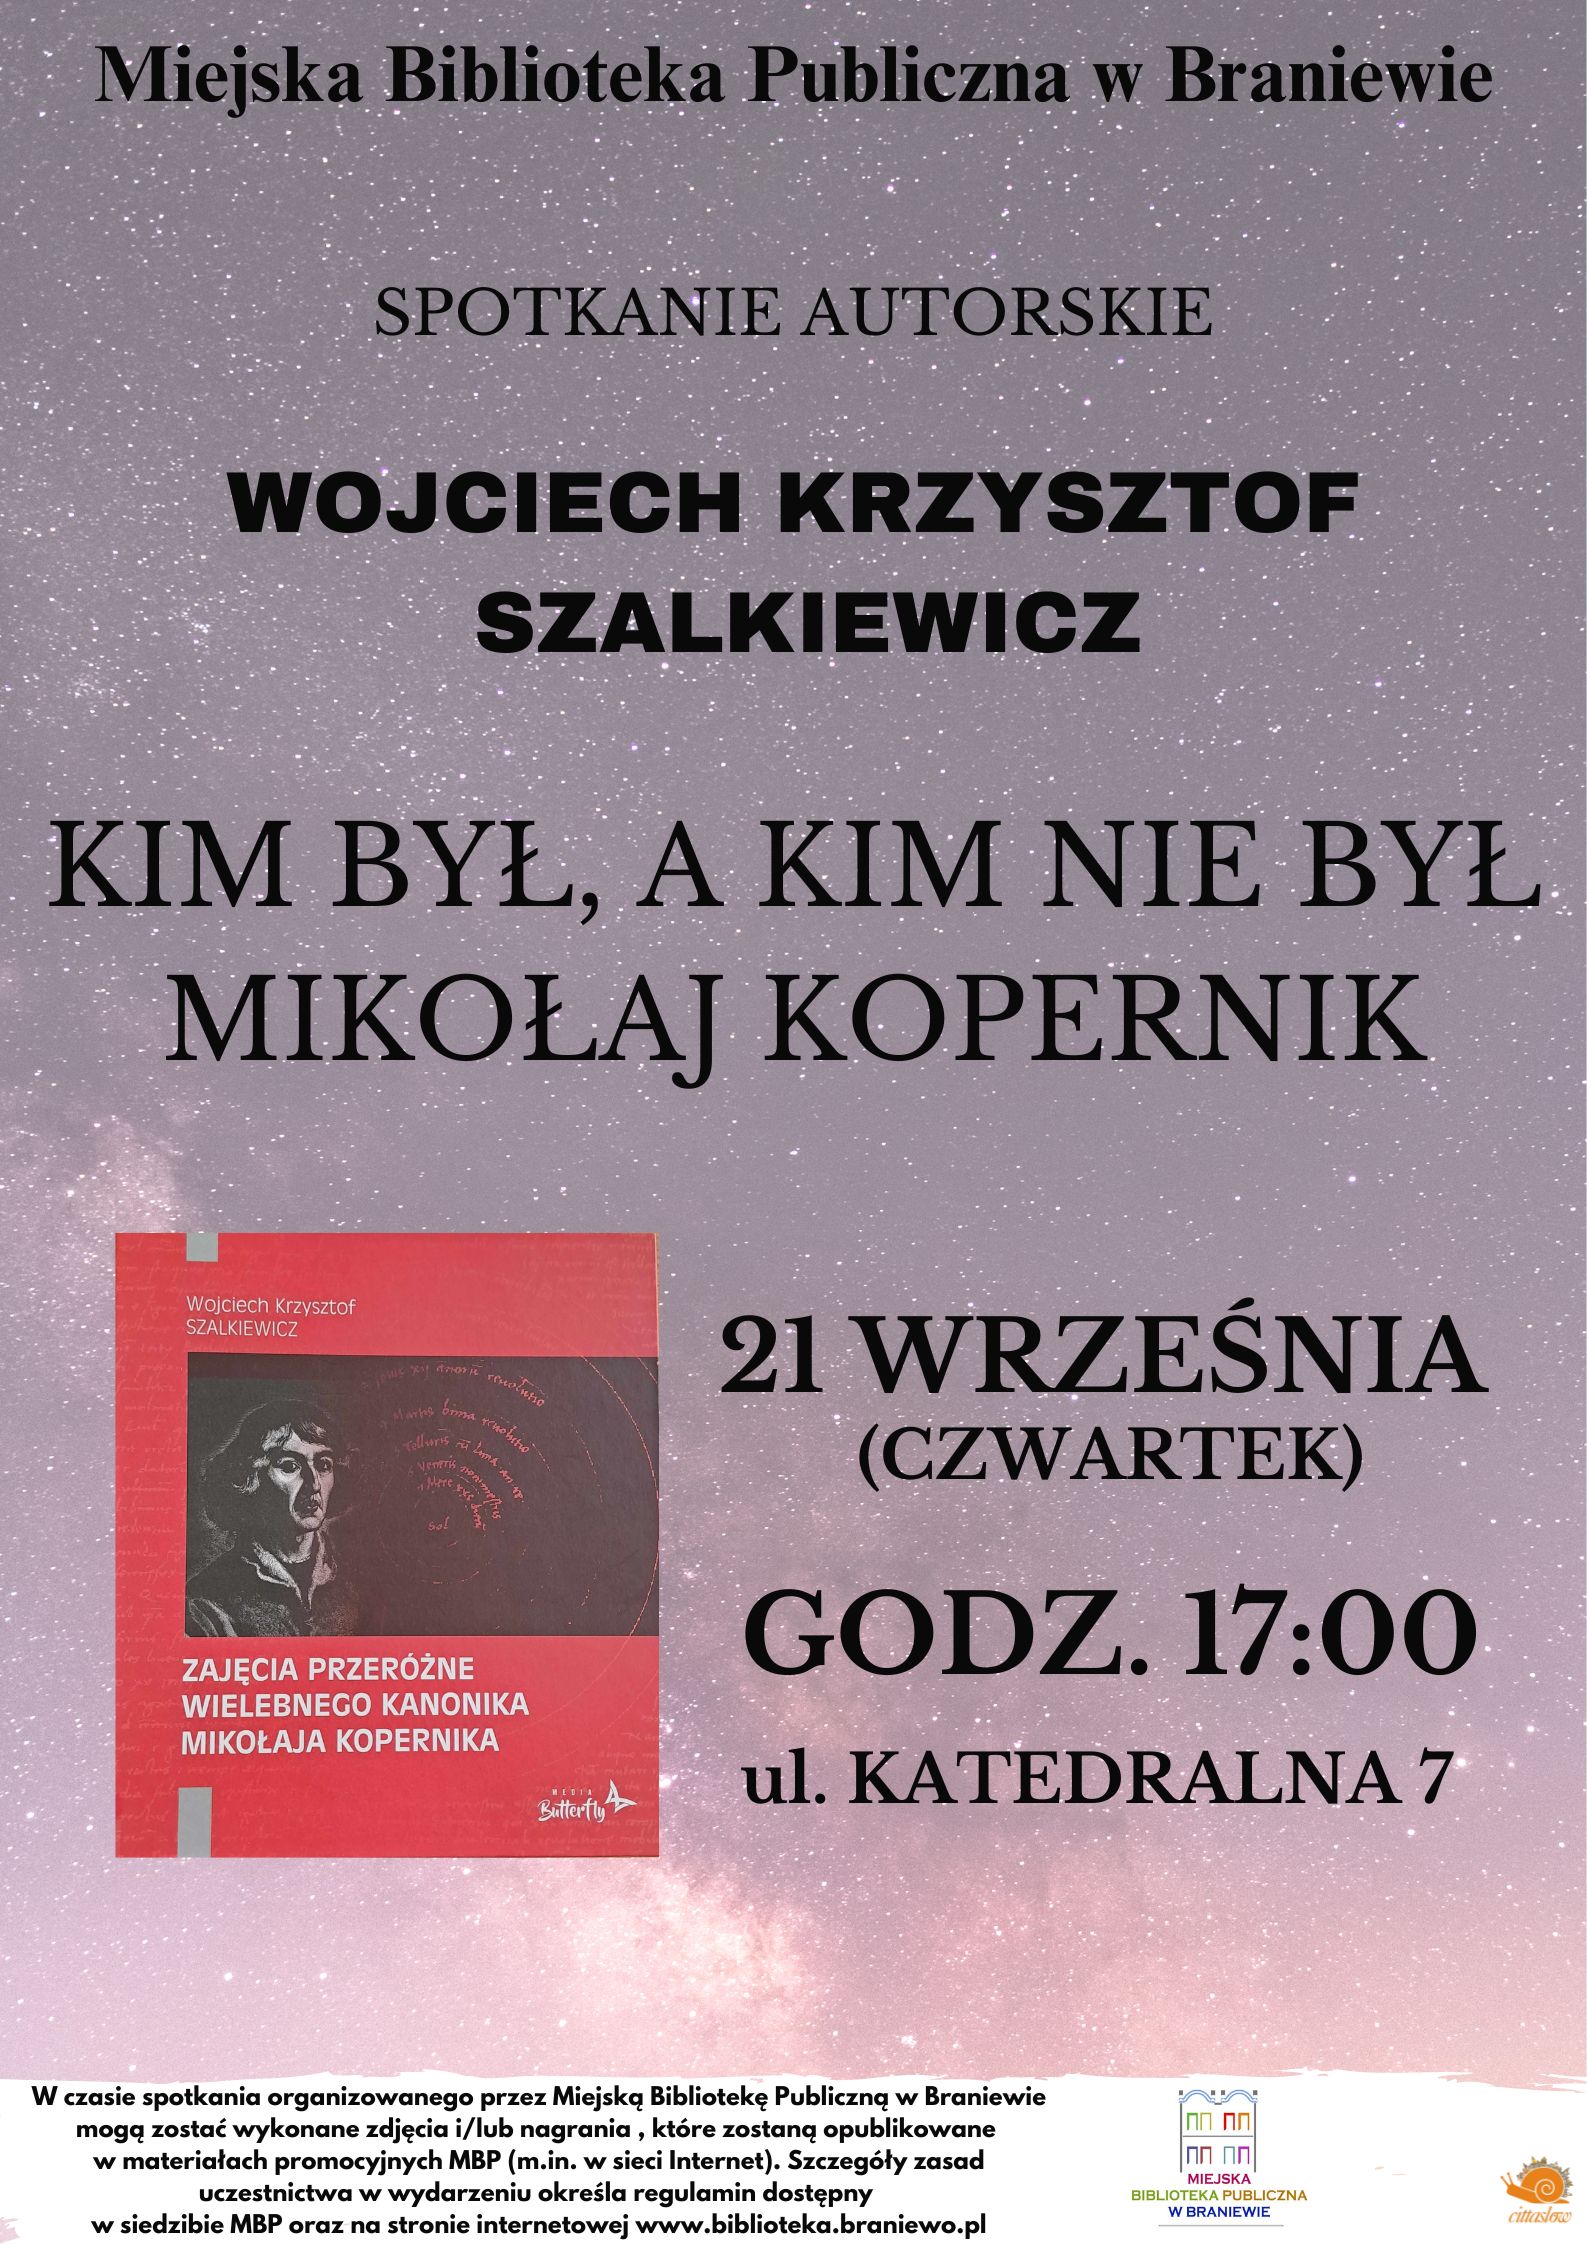 na plakacie gwieździste tło okladka ksiązki pana szalkiewicza oraz data i godzina informująca o spotkaniu